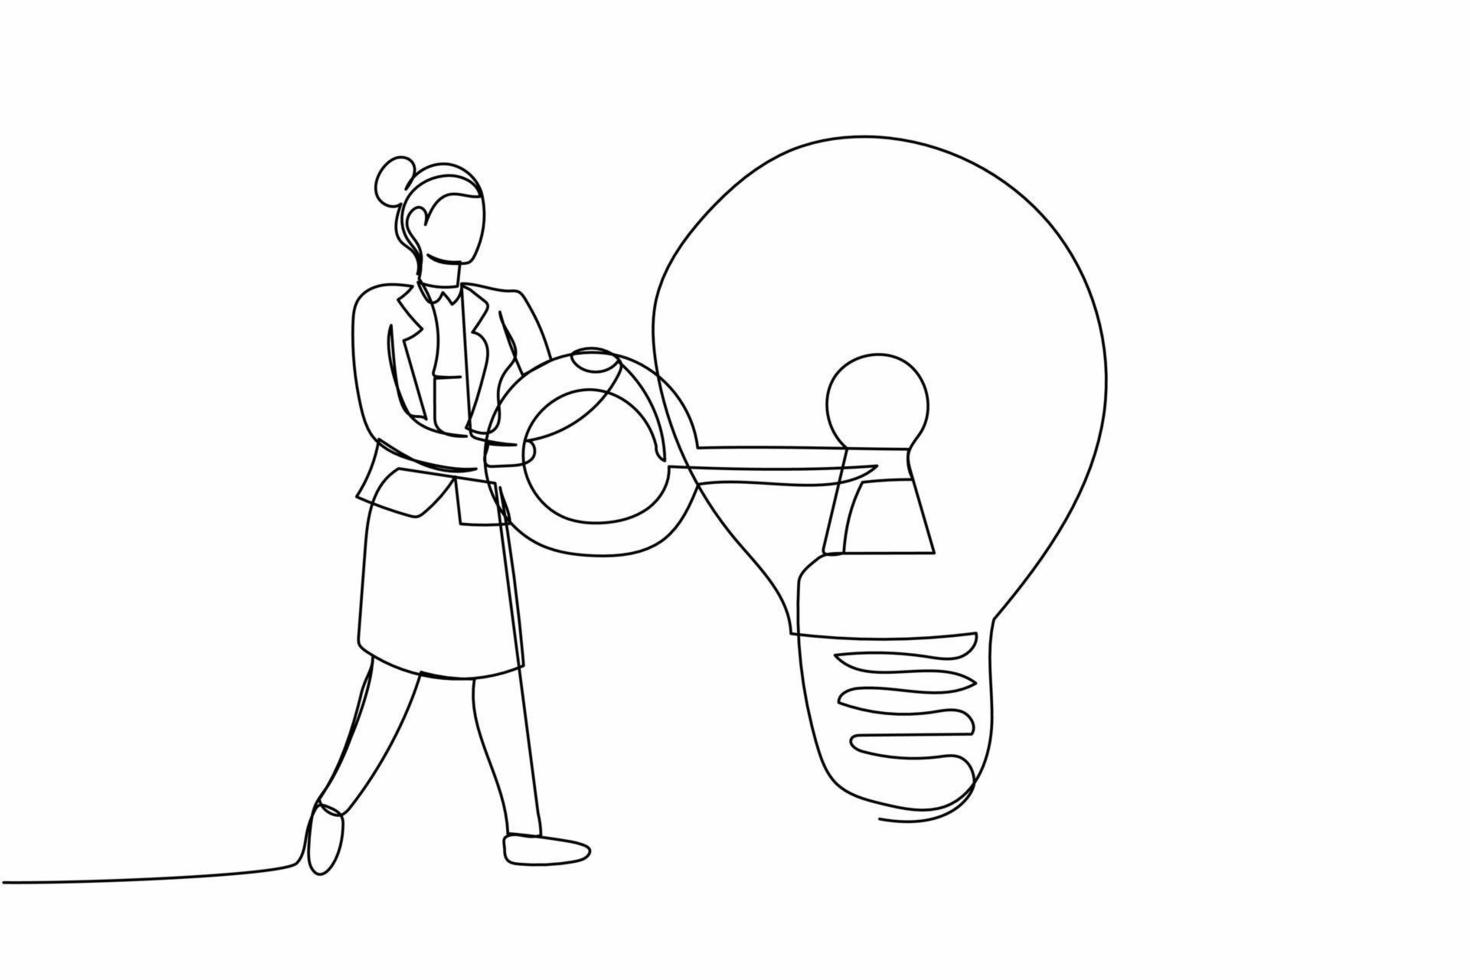 kontinuerlig ett linje teckning affärskvinna sätta nyckel in i ljus Glödlampa. brainstorming ser för företag aning, uppfinna ny produkt eller kreativ tankar. enda linje dra design vektor grafisk illustration